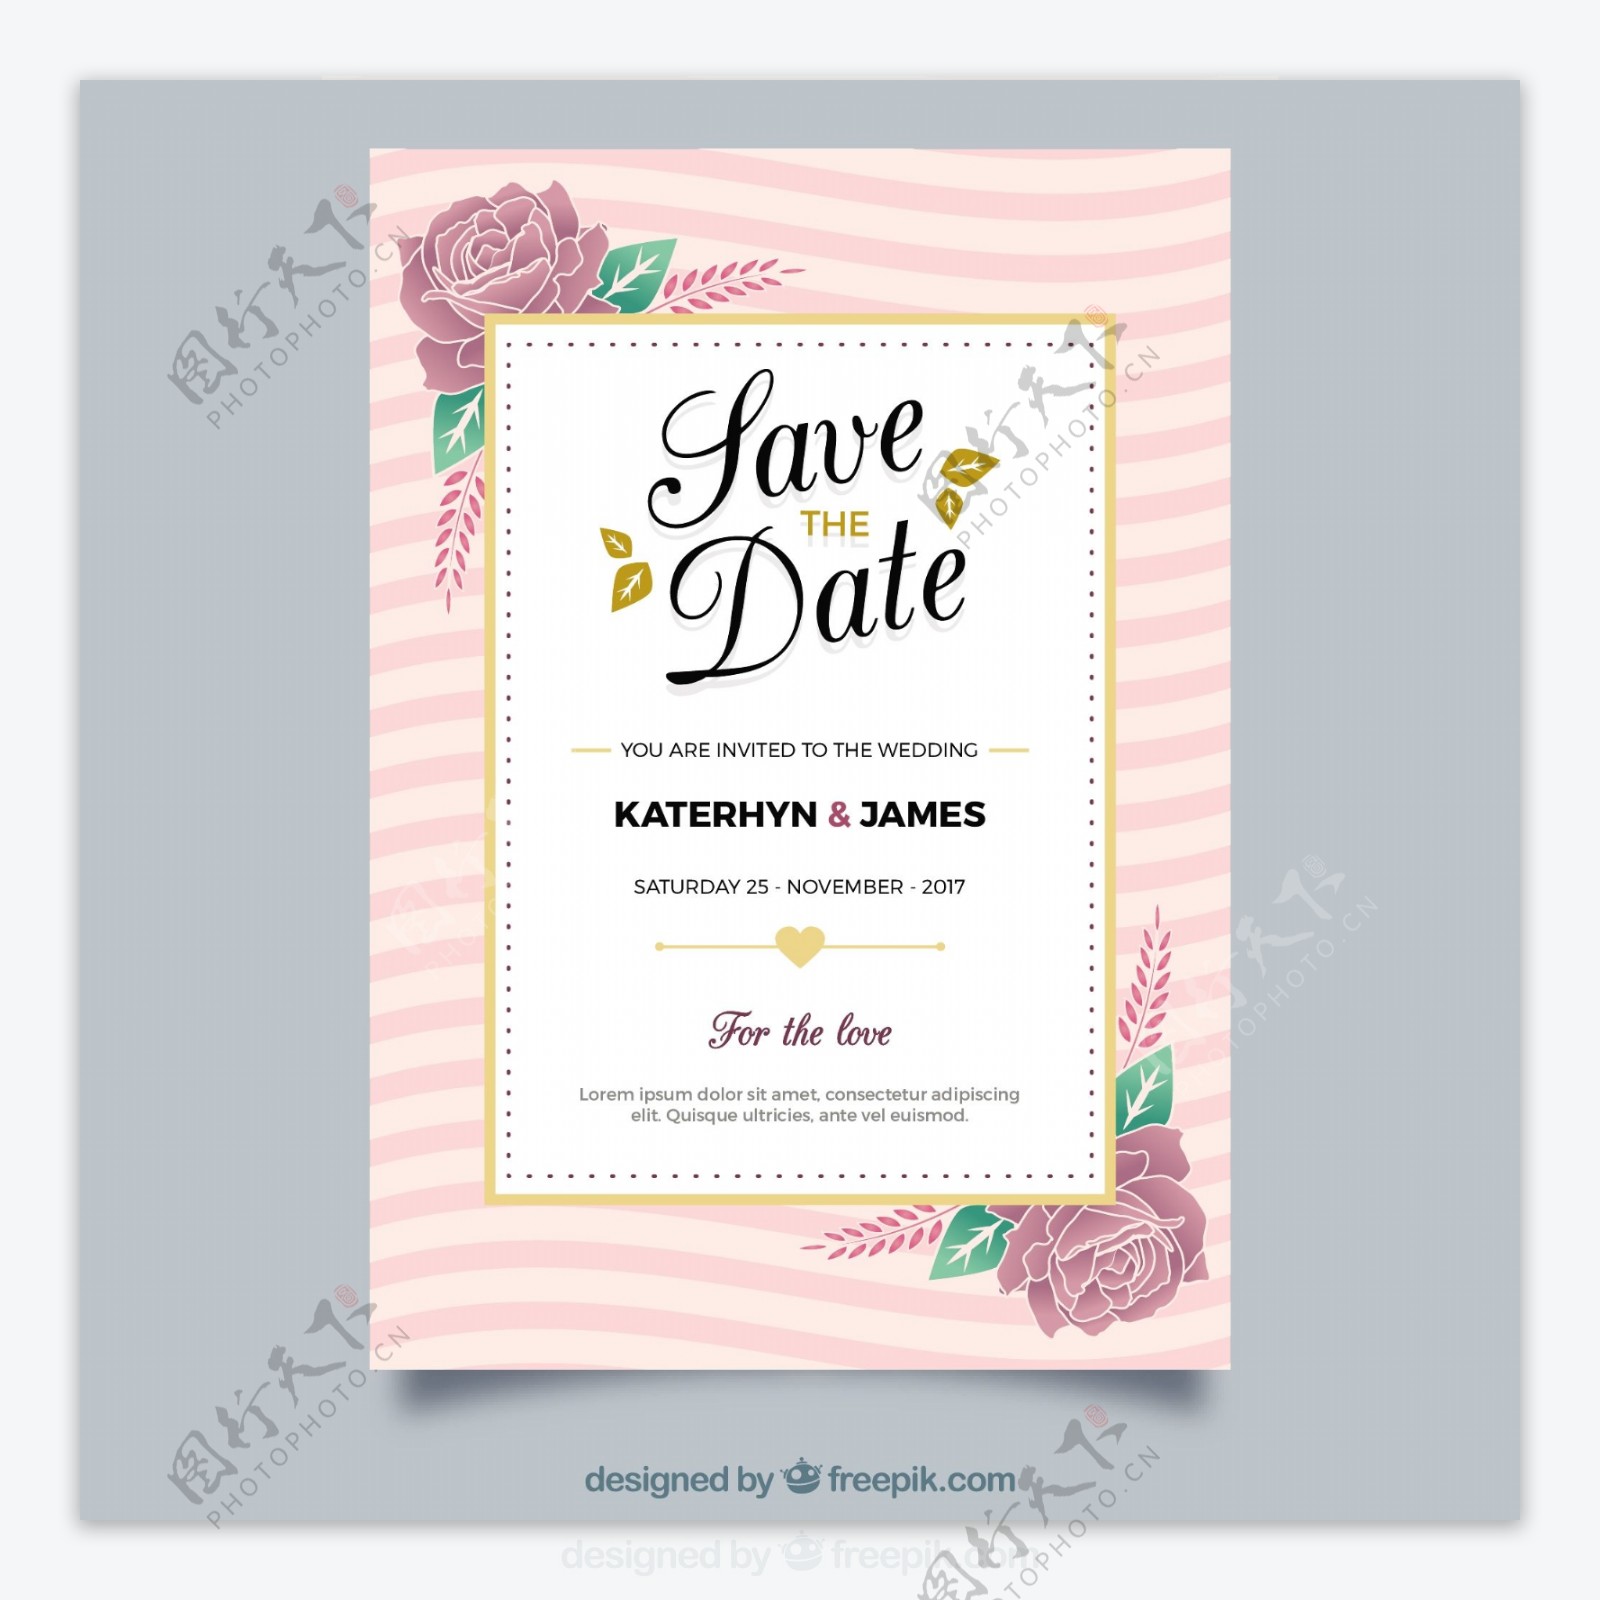 金色边框花卉插图粉红条纹婚礼邀请卡